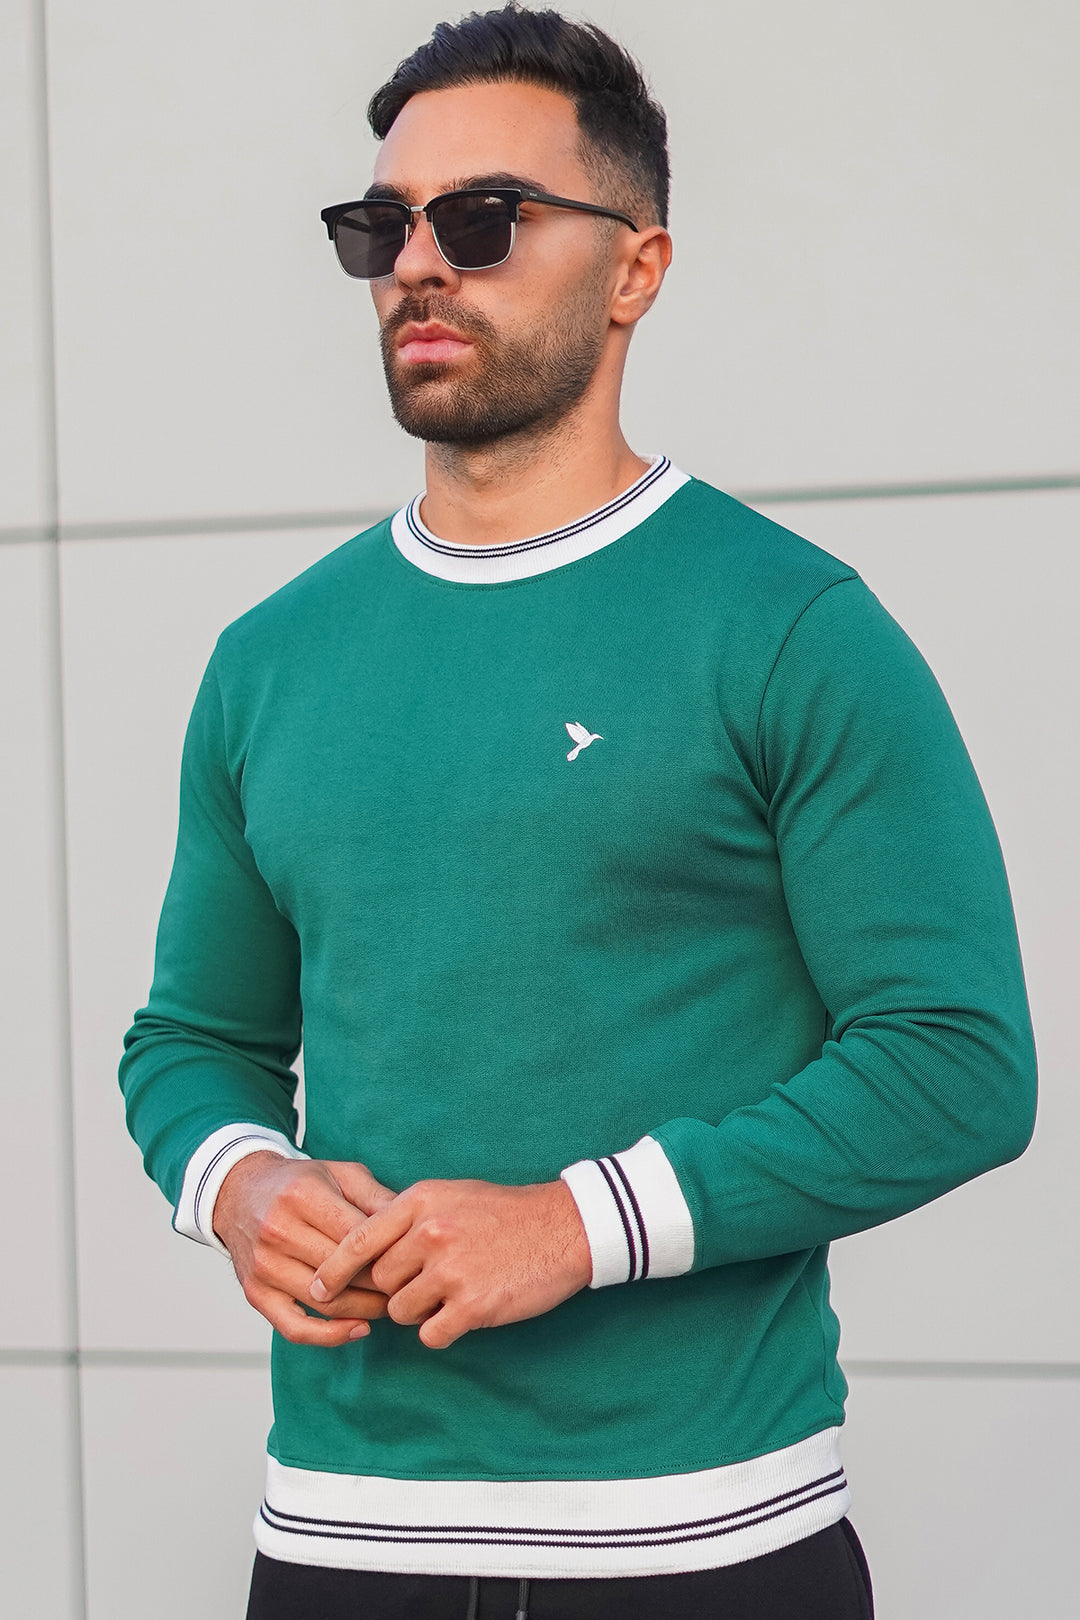 Caribbean Green Yarn Dyed Rib Sweatshirt - W23 - MSW076R